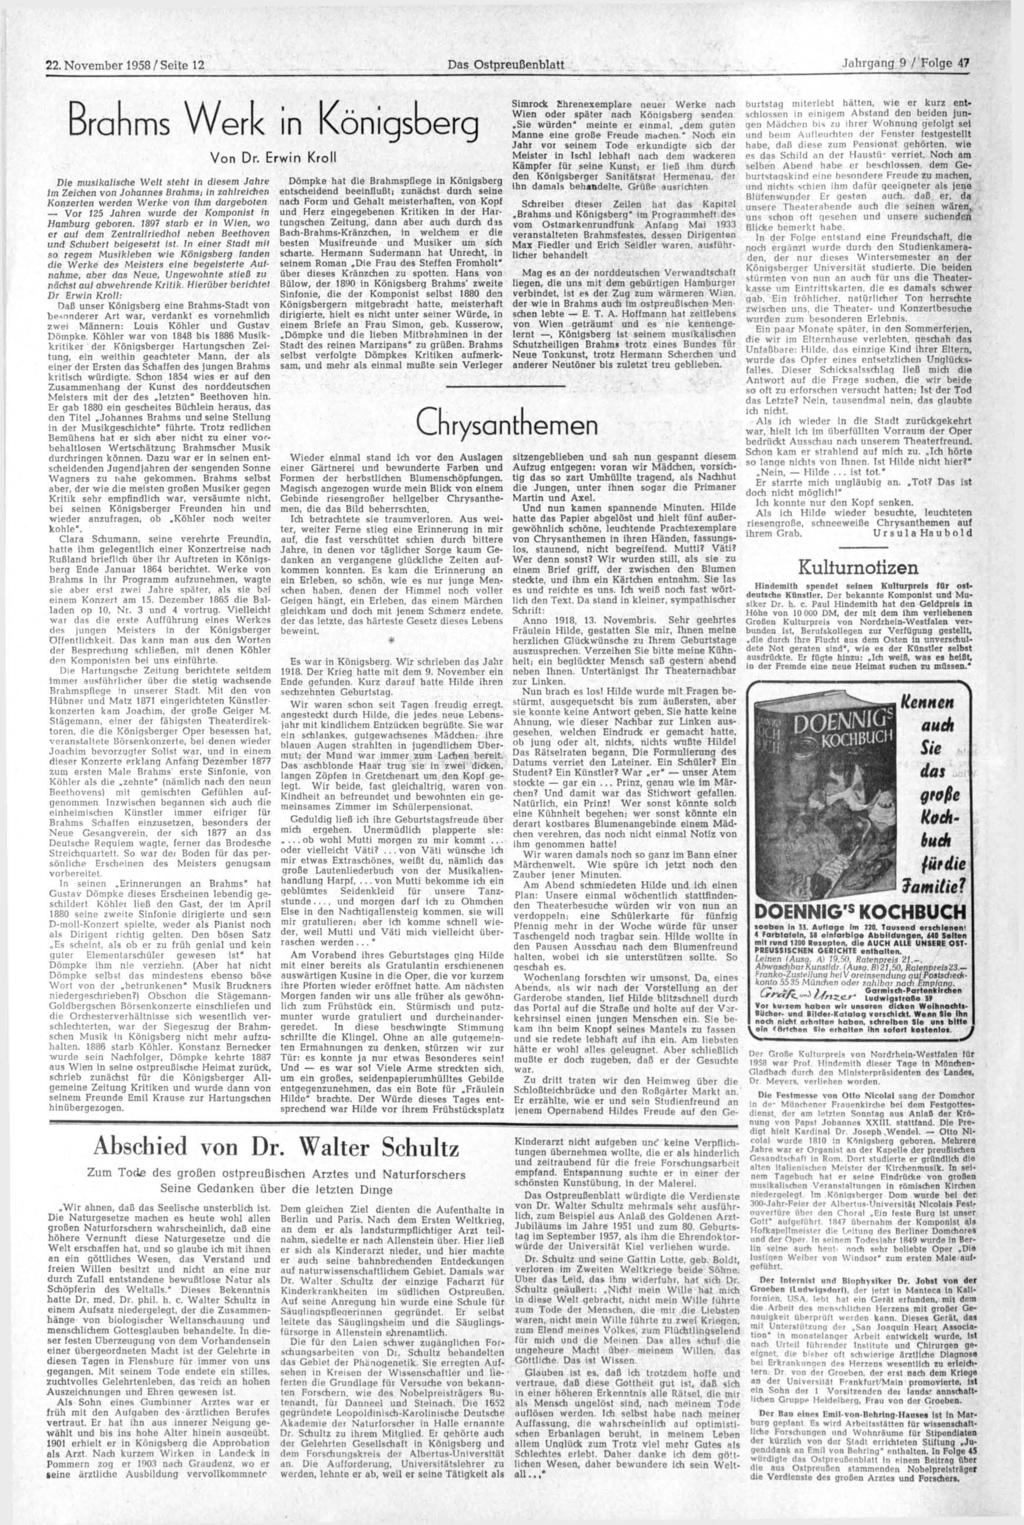 22. November 1958 / Seite 12 Das Ostpreußenblatt Jahrgang 9 / Folge 47 Brahms Werk in Königsberg Simrock Khrenexemplare neuer Werke nach burtstag miterlebt hätten, wie er kurz entschlossen in einigem